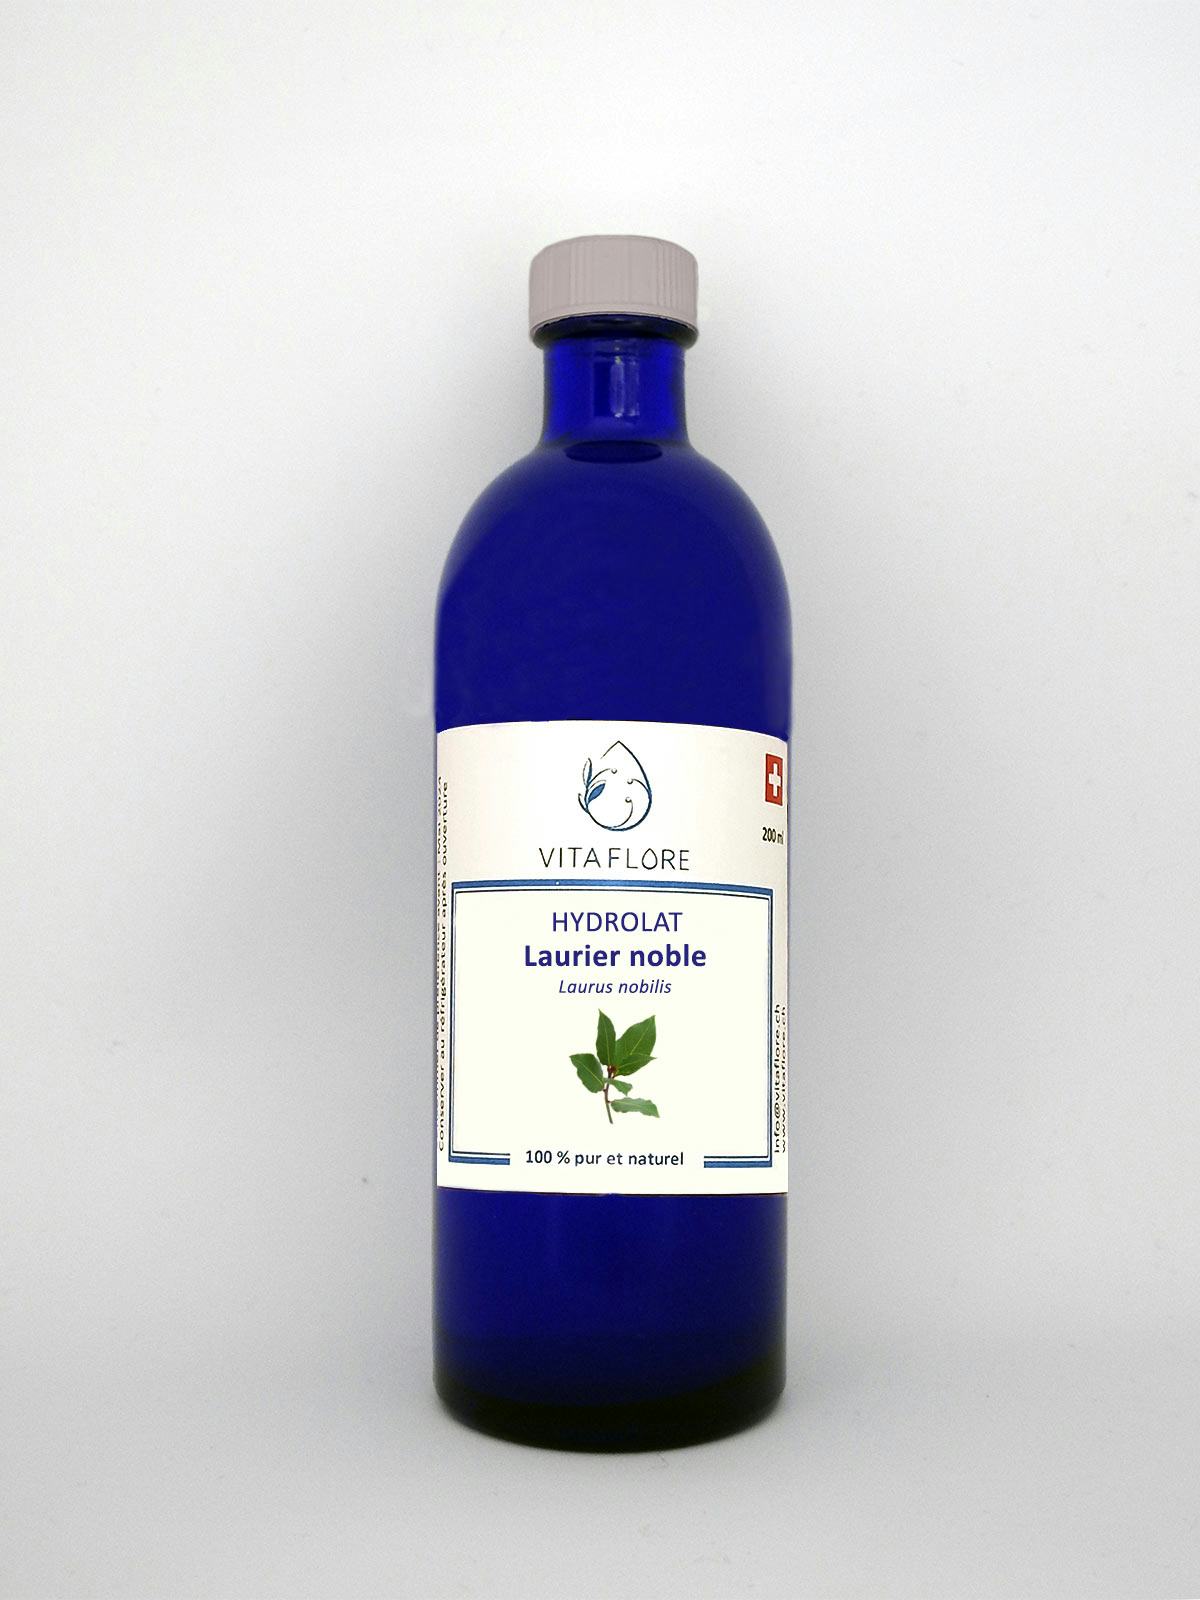 Noble laurel hydrosol, Vitaflore, Grimisuat, image 1 | Mimelis